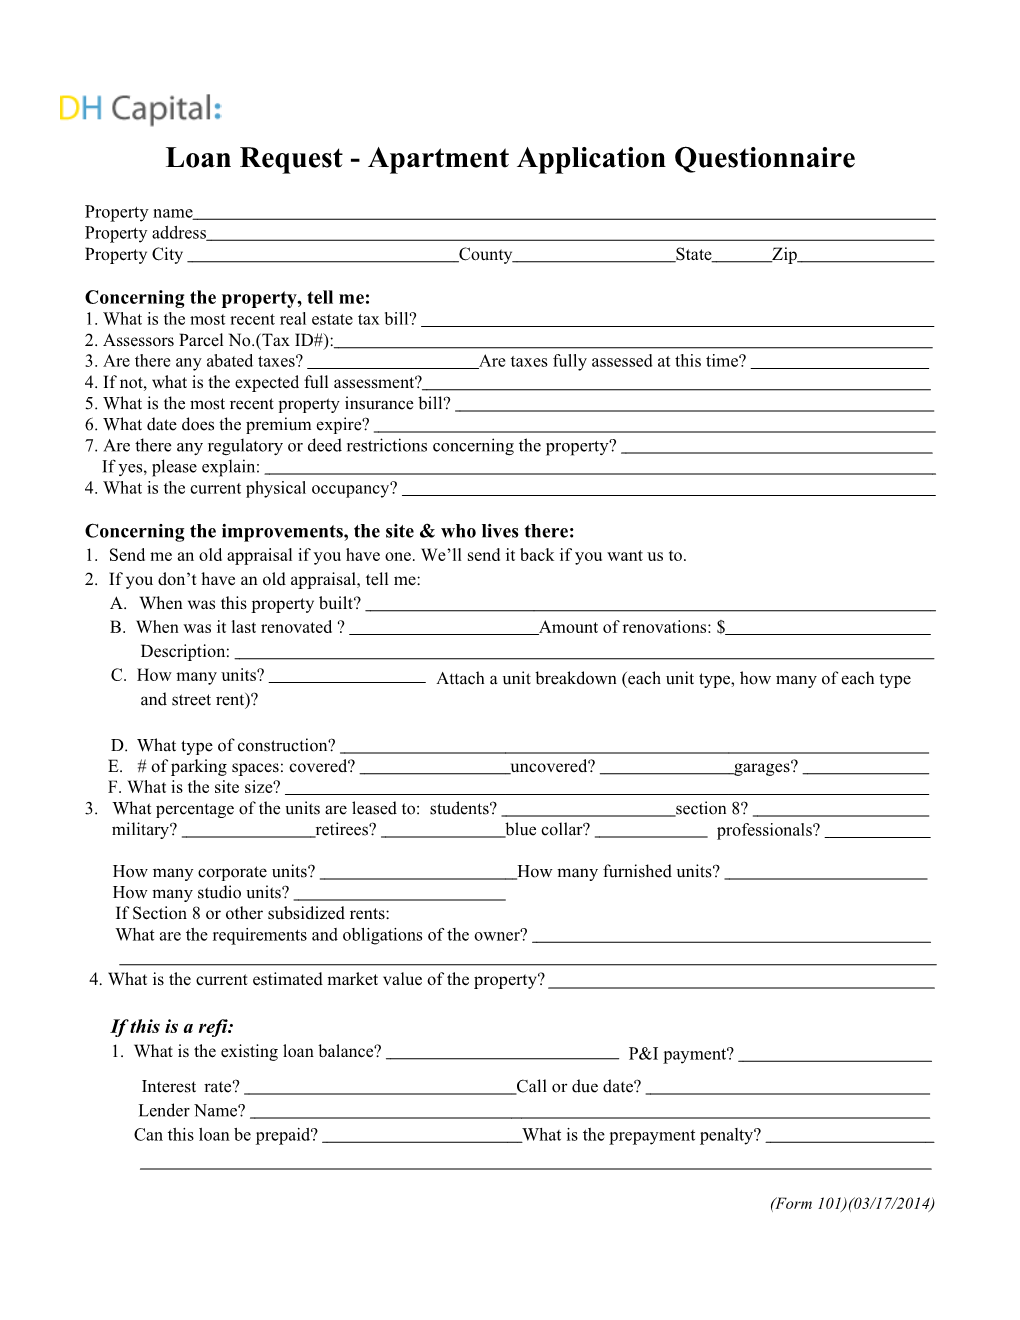 Loan Request - Apartment Application Questionnaire s1